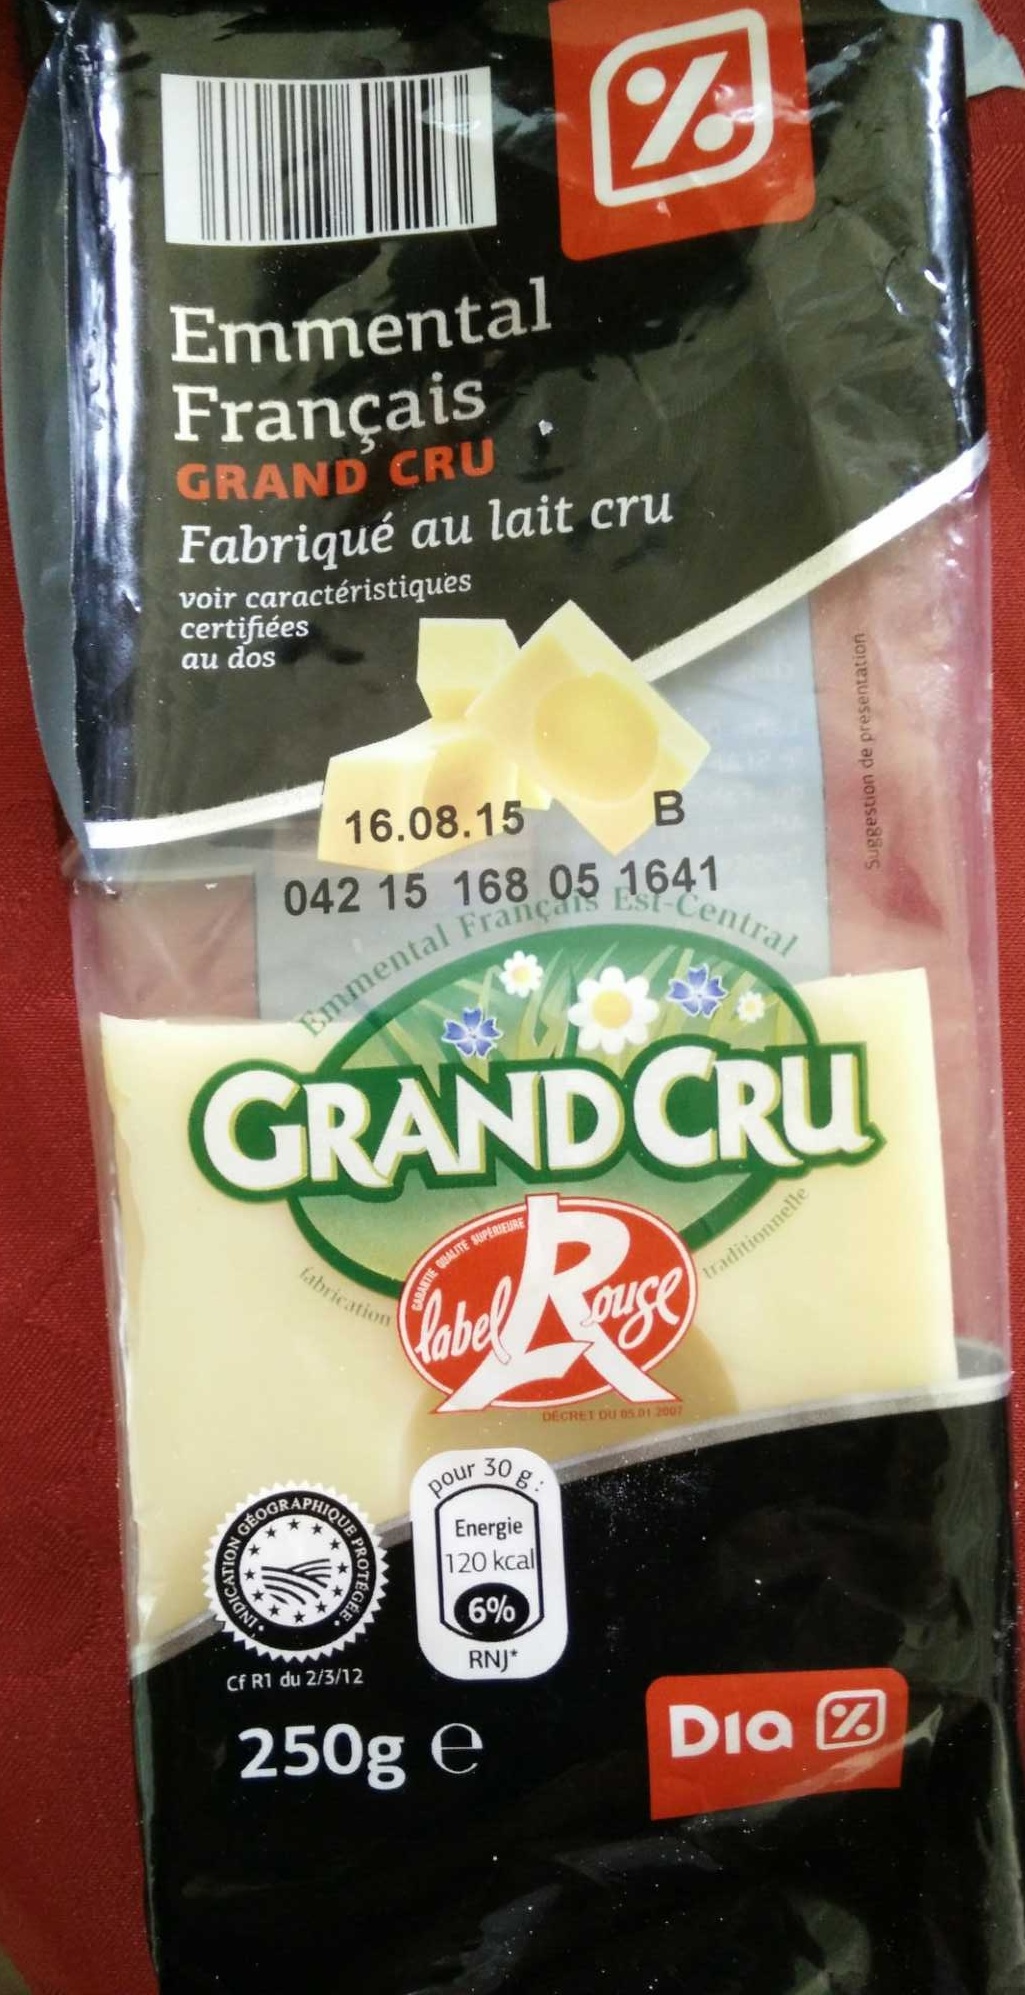 Emmental Français grand cru (32% MG) - Product - fr